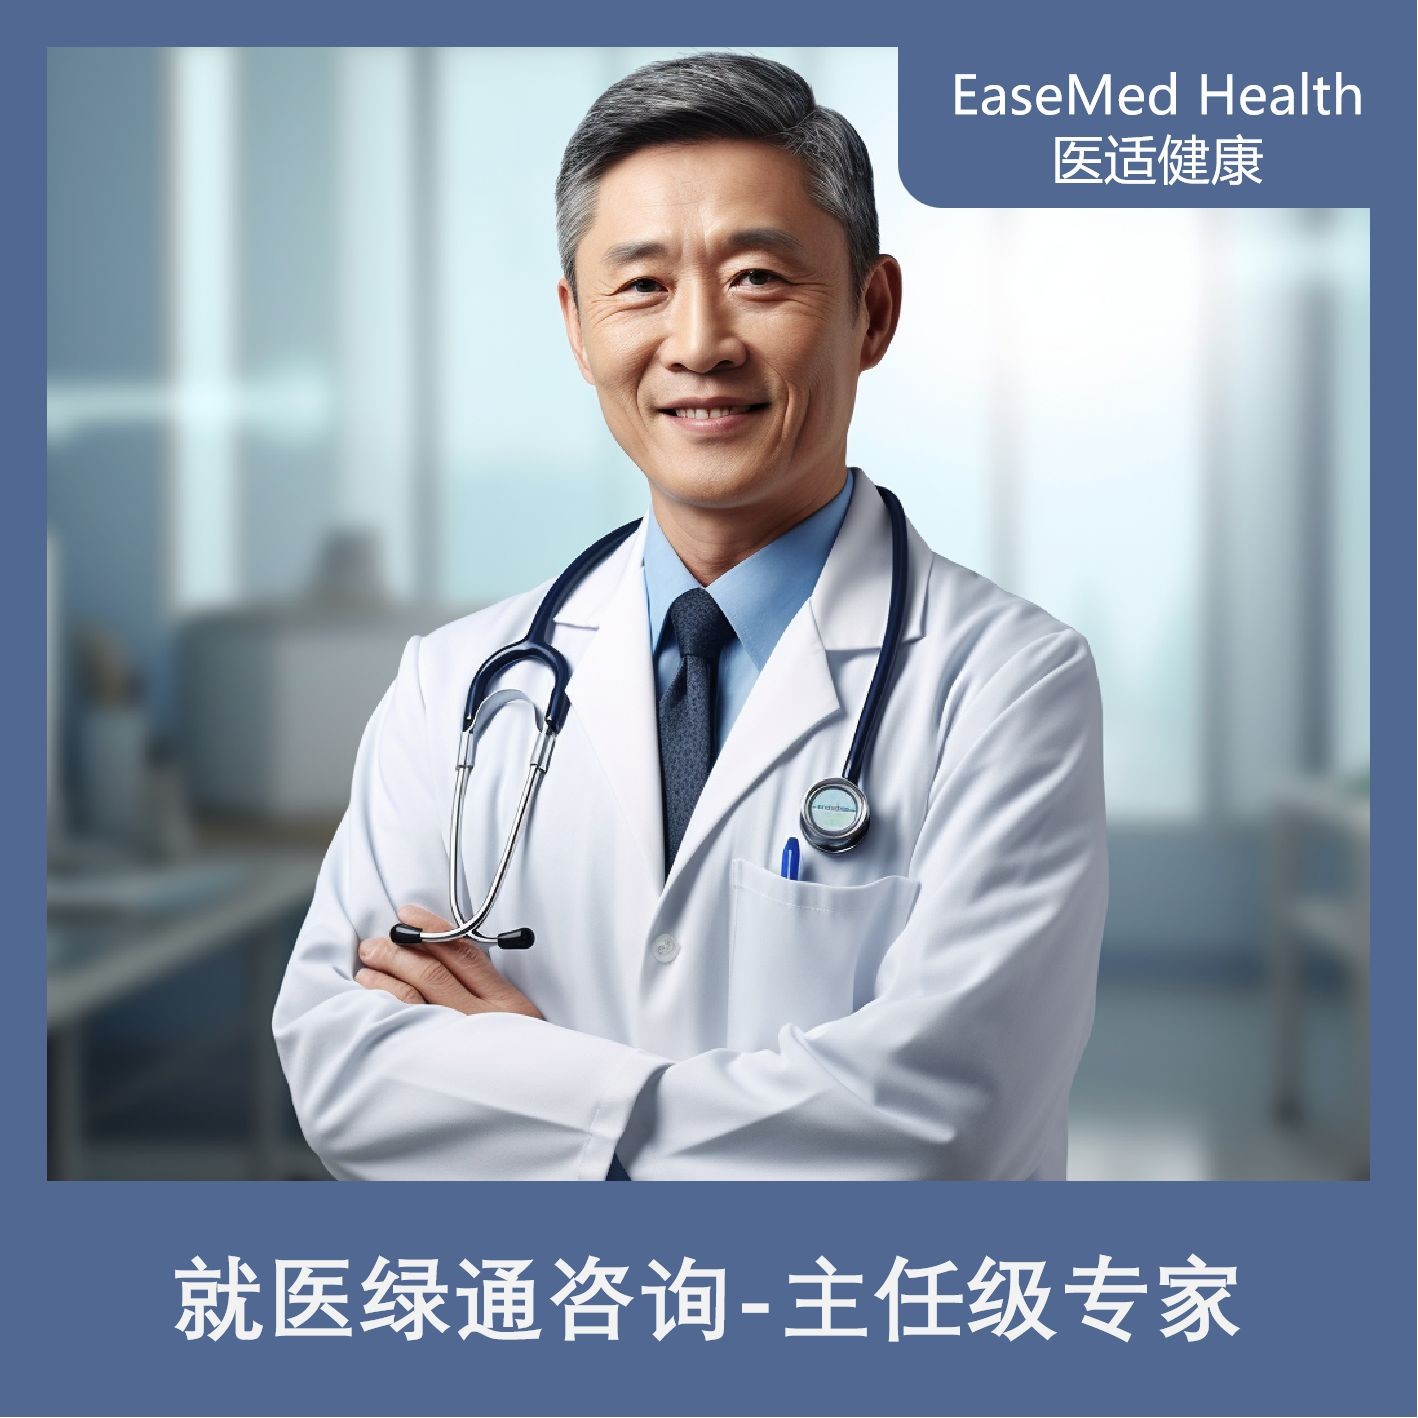 体检预约-就医绿通咨询-主任级专家-上海攸仕医院管理有限公司